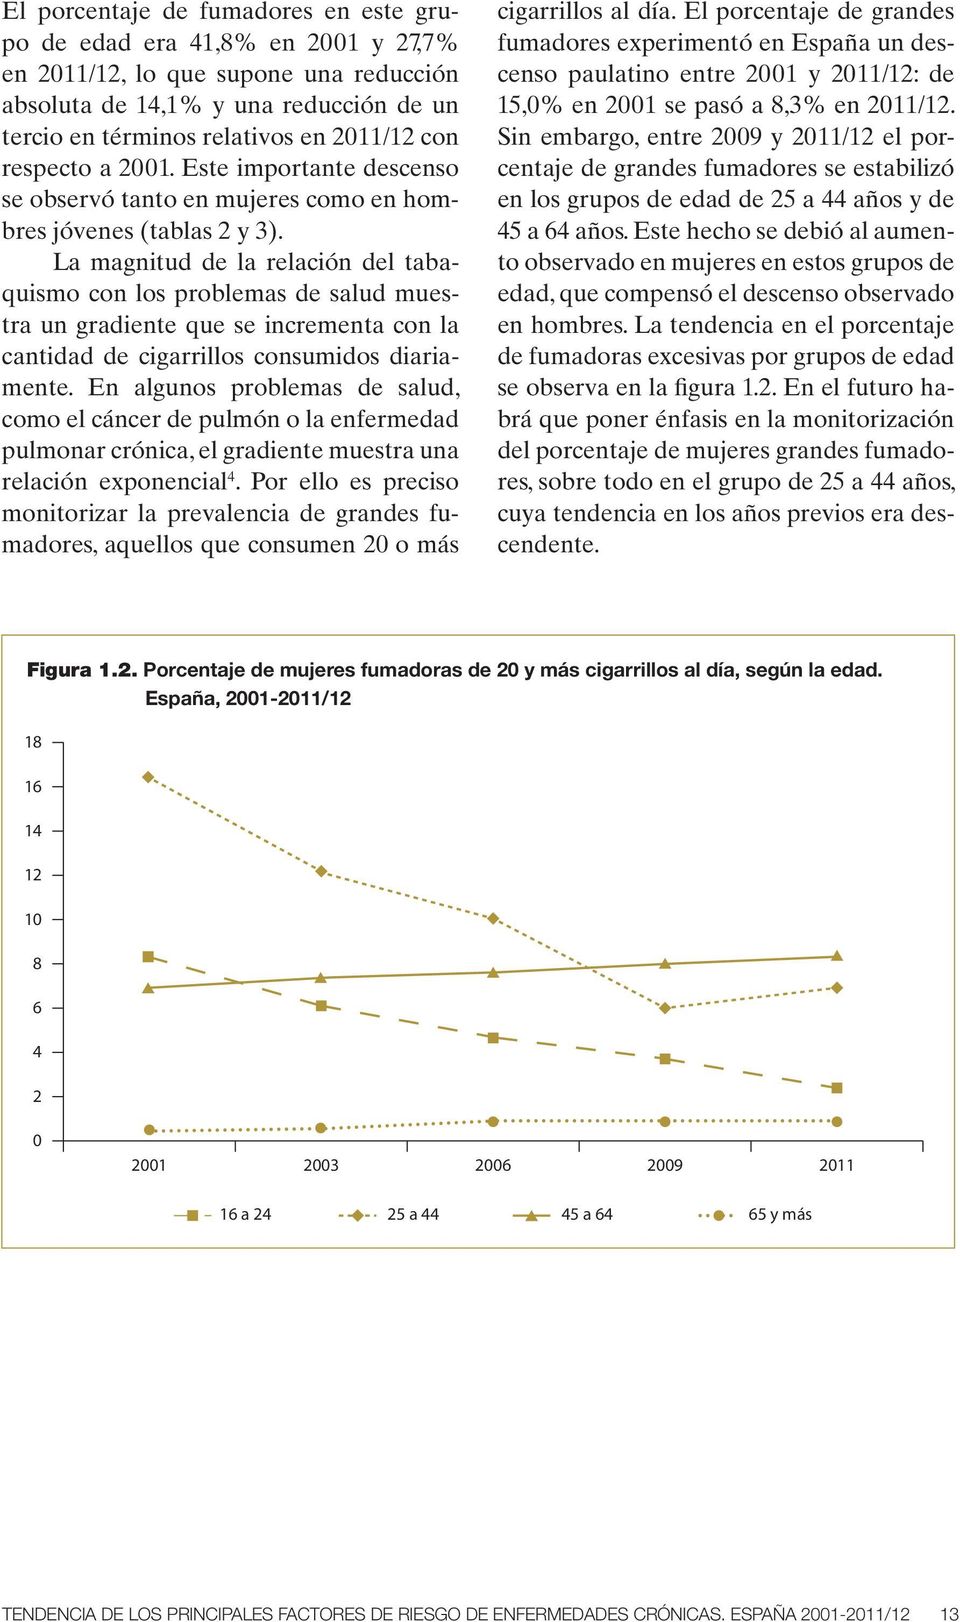 La magnitud de la relación del tabaquismo con los problemas de salud muestra un gradiente que se incrementa con la cantidad de cigarrillos consumidos diariamente.